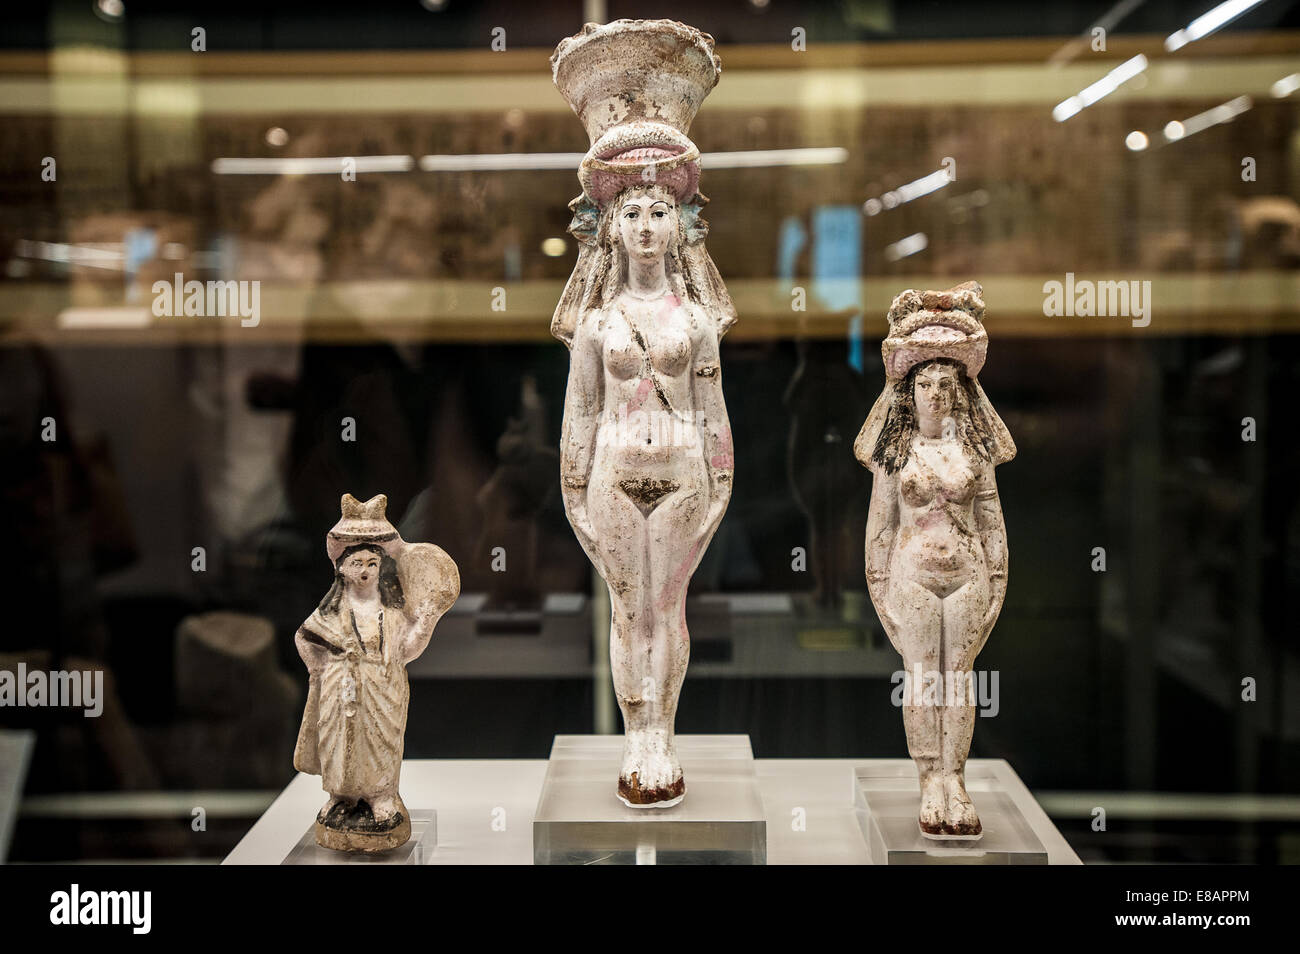 Italia Piemonte Torino Museo Egizio Italia Piemonte Torino Museo Egizio Statue di Iside - Afrodite. Queste figure mostrano la f Foto Stock